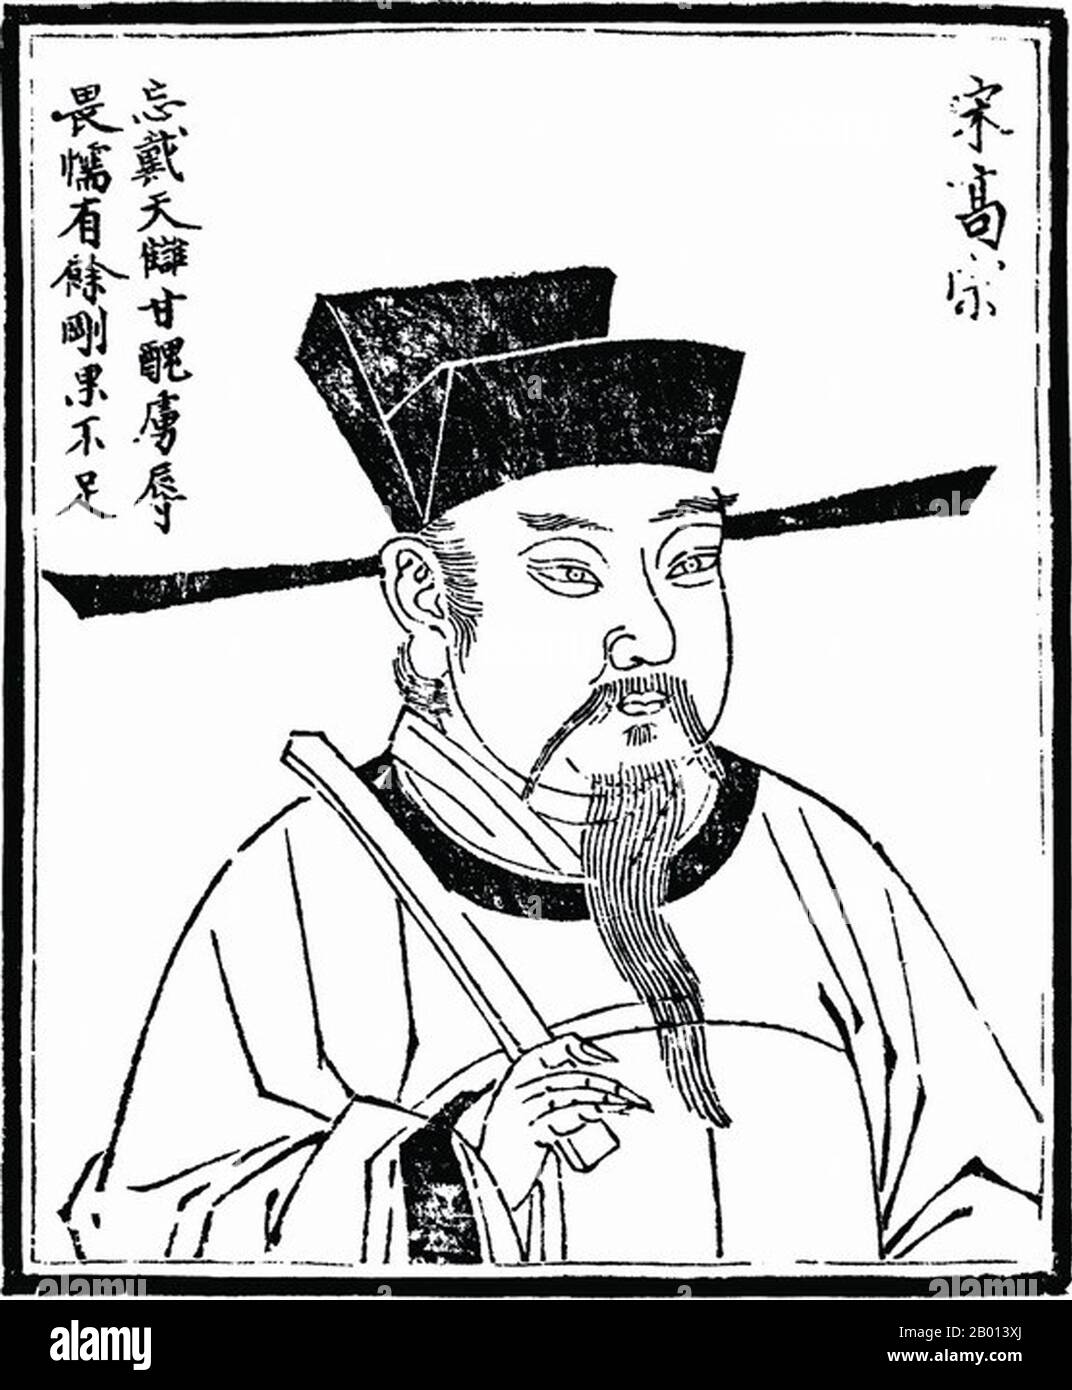 Chine : empereur Gaozong (12 juin 1107 - 9 novembre 1187), 10e dirigeant de la dynastie Song (r. 1127-1129) et 1er souverain de la dynastie des Song du Sud (r. 1129-1162). Illustration, c. xviiie siècle. Gaozong, nom personnel Zhao Gou et nom de courtoisie Deji, était le dixième empereur de la dynastie des Song du Nord. Après que les empereurs de Qinzong et de Huizong ont été capturés par le Jurchen, il est devenu l'empereur et a établi l'empire du chant du Sud à Lin'an (Hangzhou moderne). Au cours de son règne, Jurchens attaque souvent l'empire de la chanson du Sud. Banque D'Images